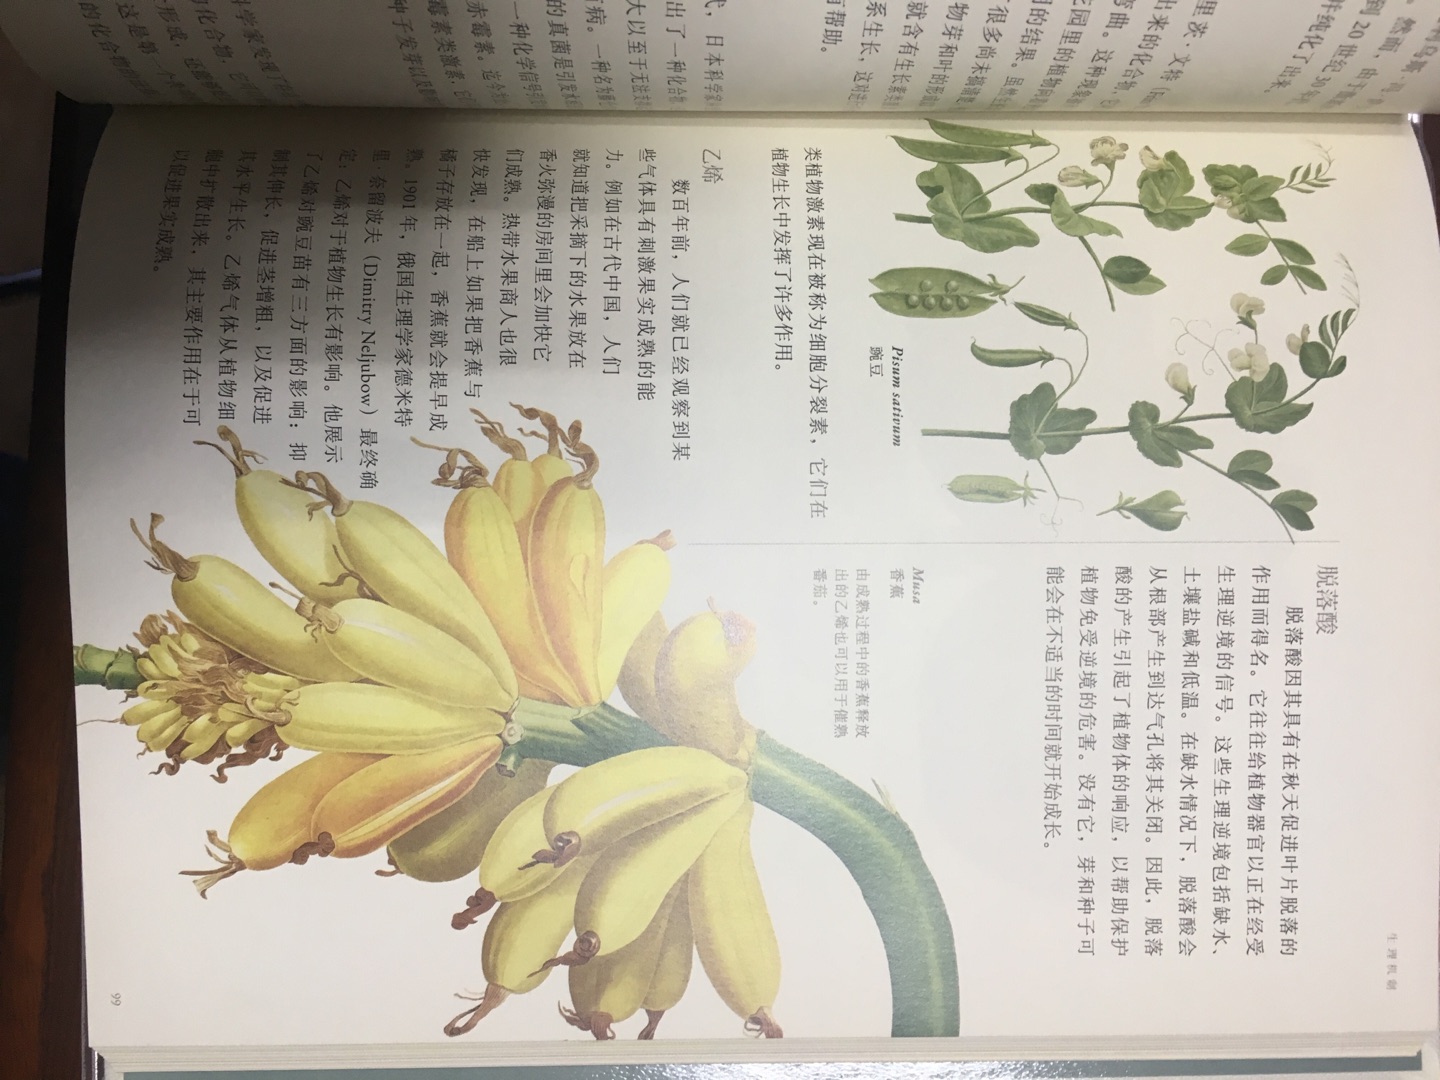 非常好的植物书，感觉自己是半个植物学家了，一种迷之错觉